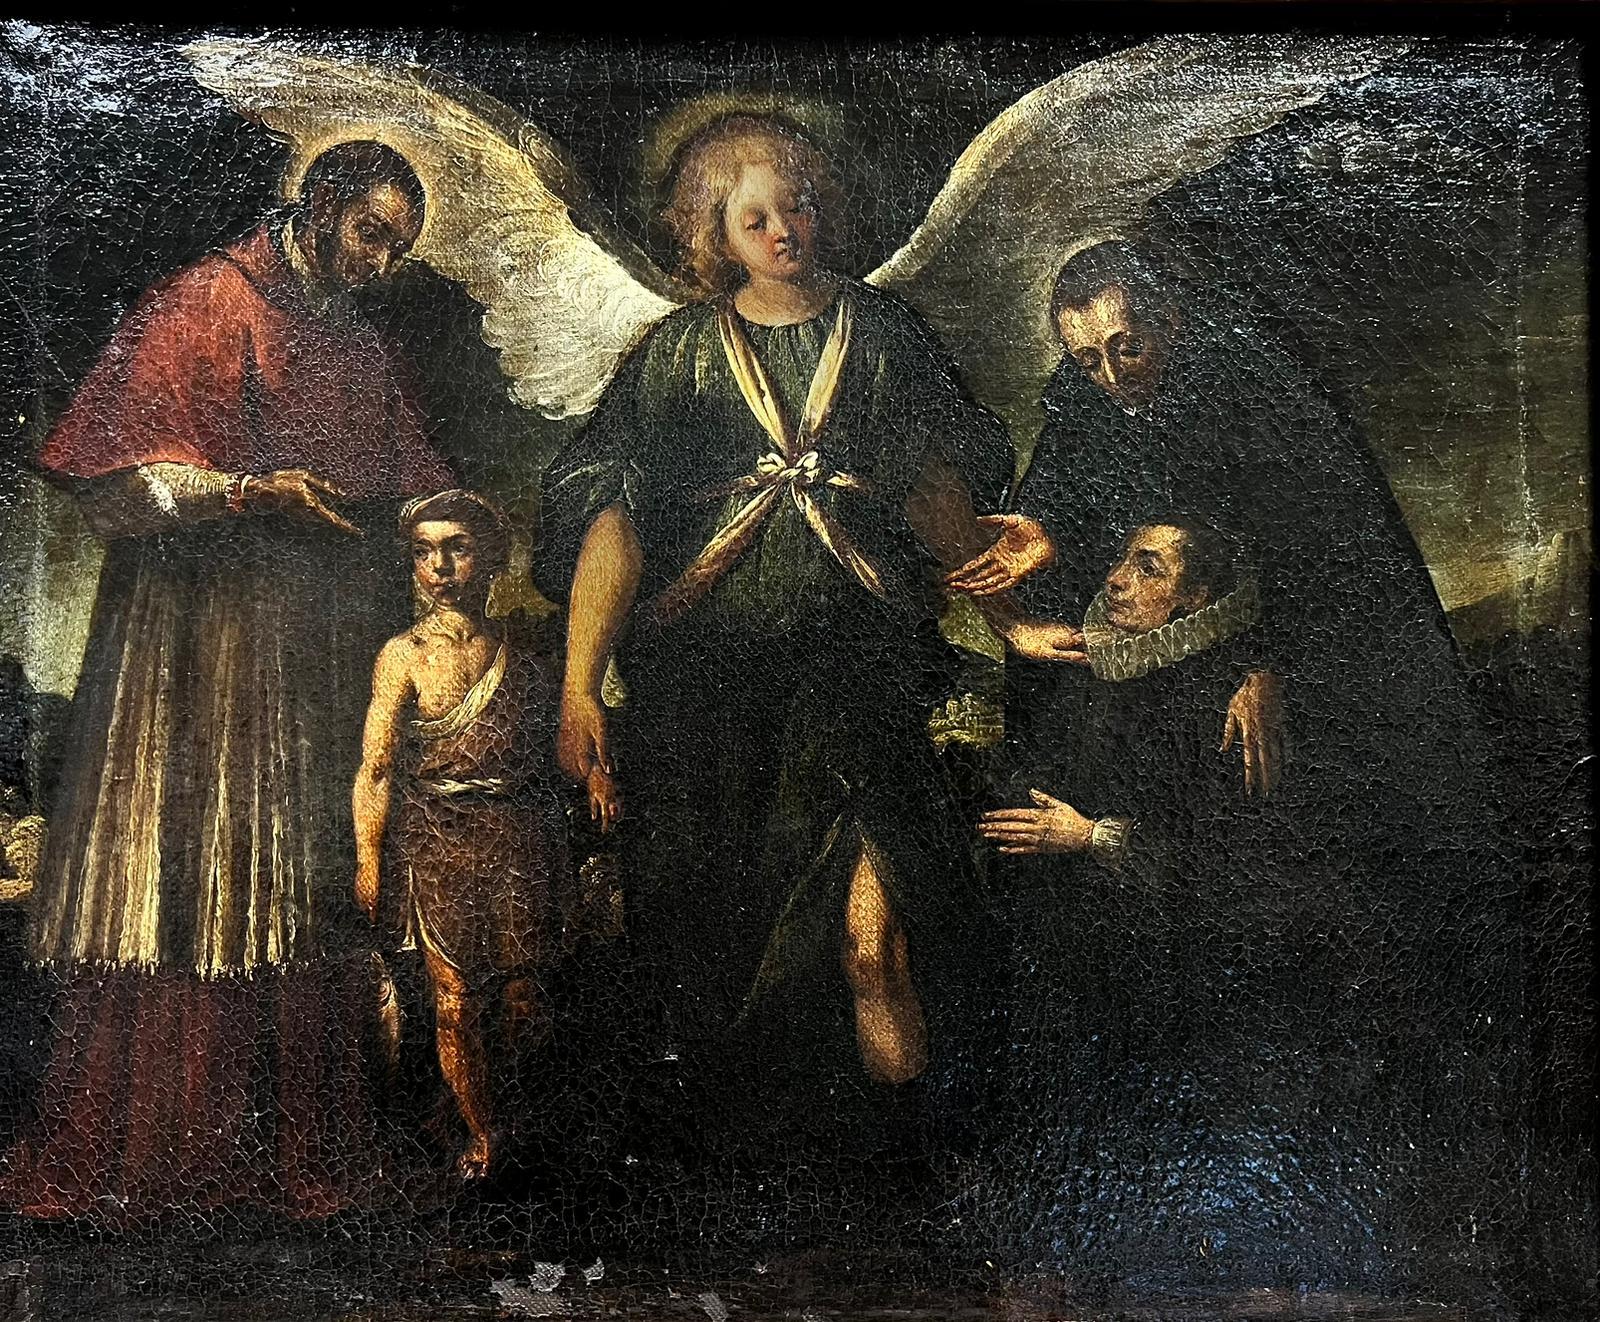 Portrait Painting Italian Old Master 18th Century - Fine Italian Old Master Oil Painting Angel & Saints Appearing to Figures (Ange et saints apparaissant à des personnages)